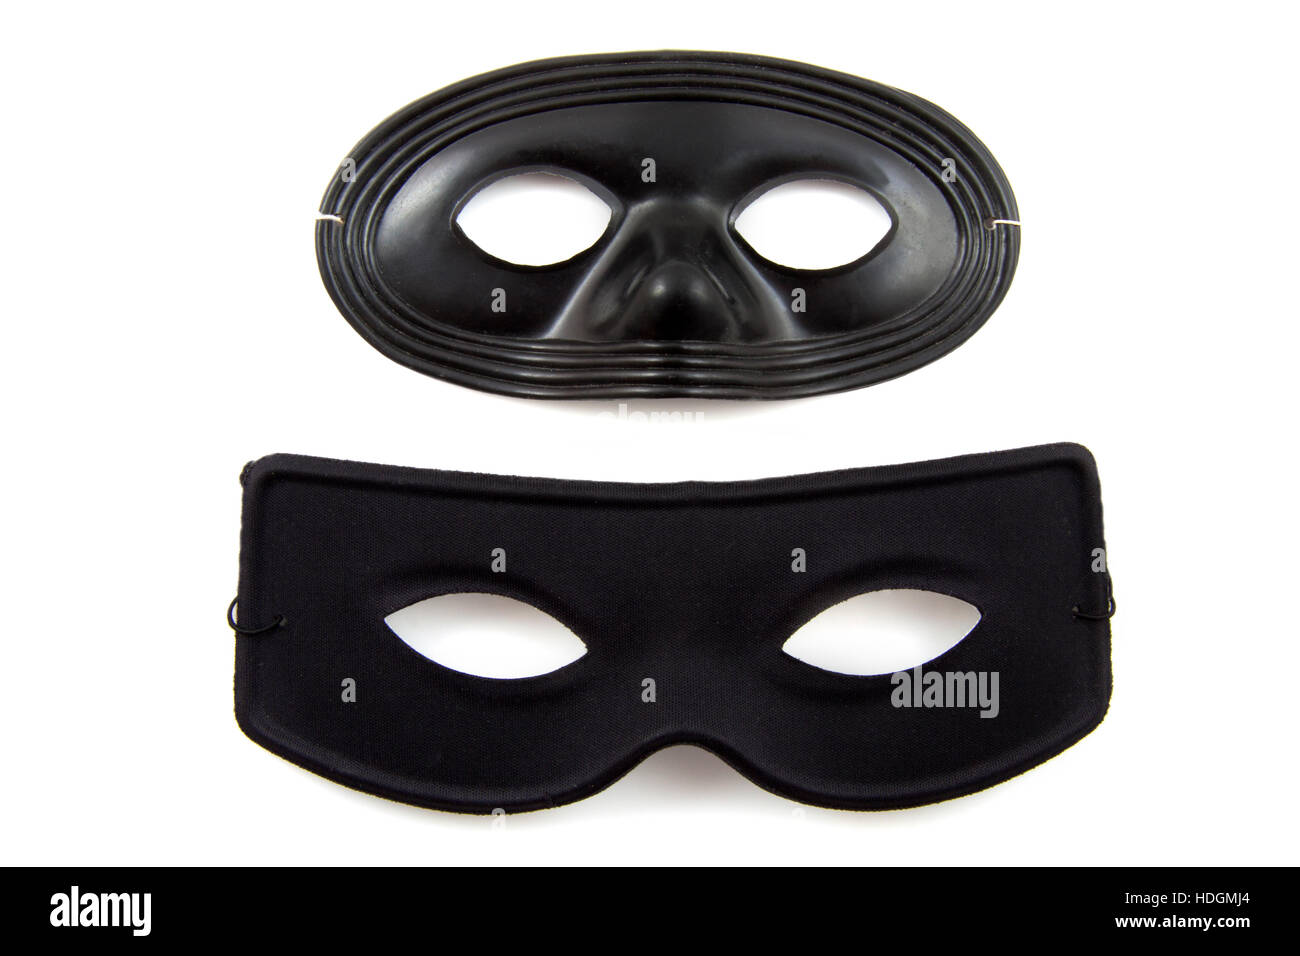 Zwei schwarze Masken isoliert auf einem weißen blackground Stockfoto